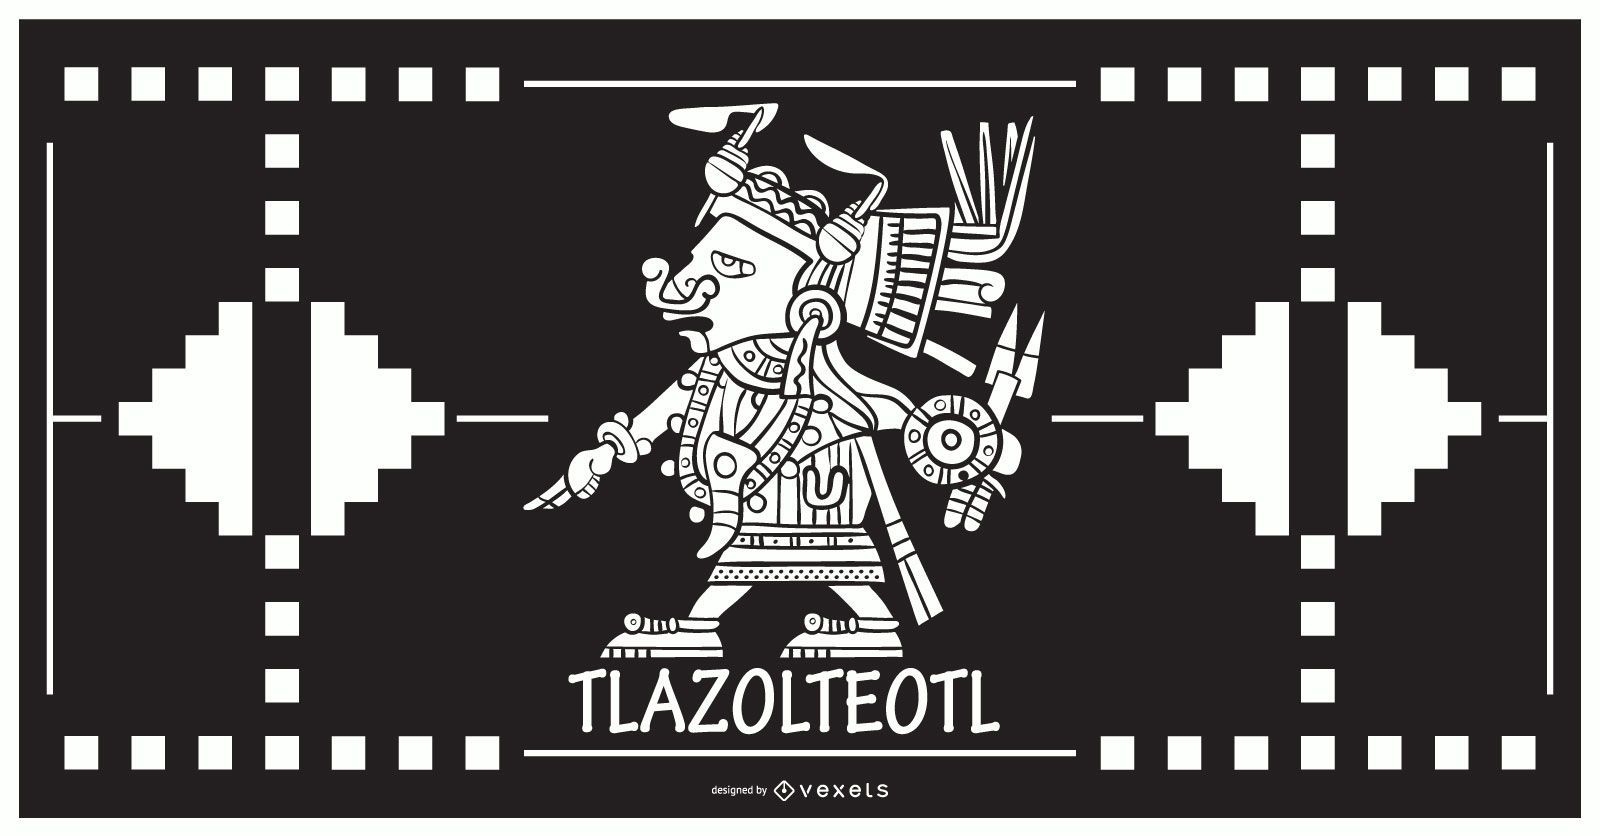 Tlazolteol aztec god design